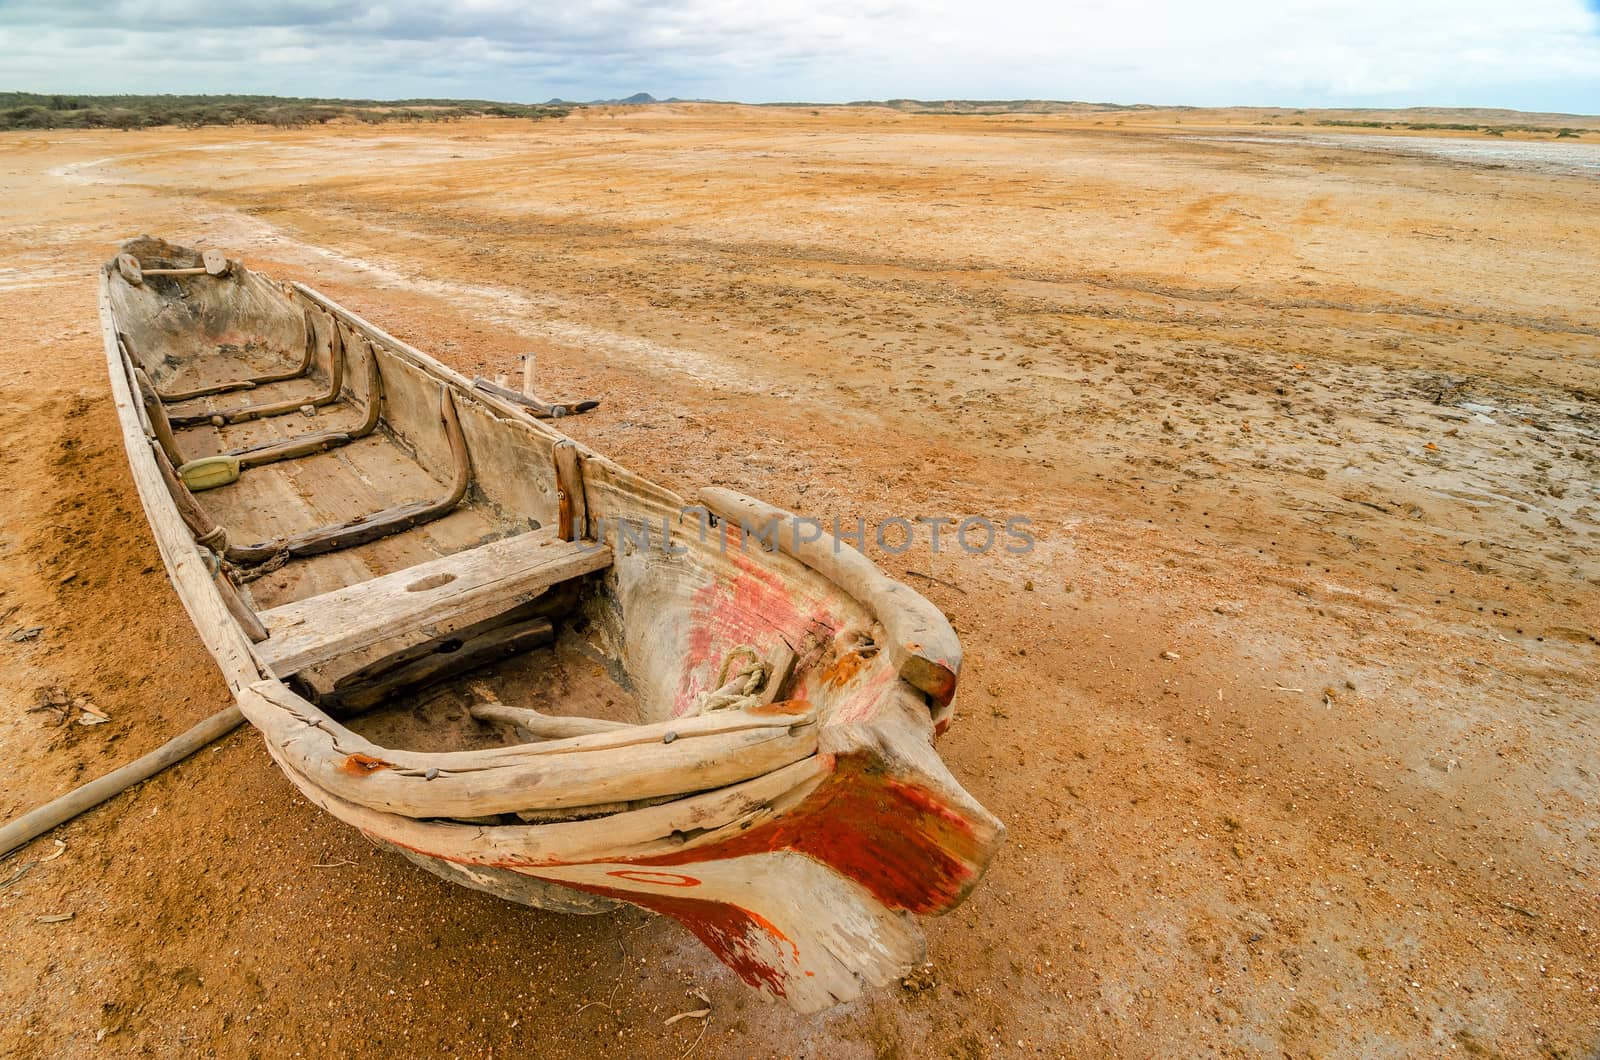 A canoe in the desert region of La Guajira in Colombia